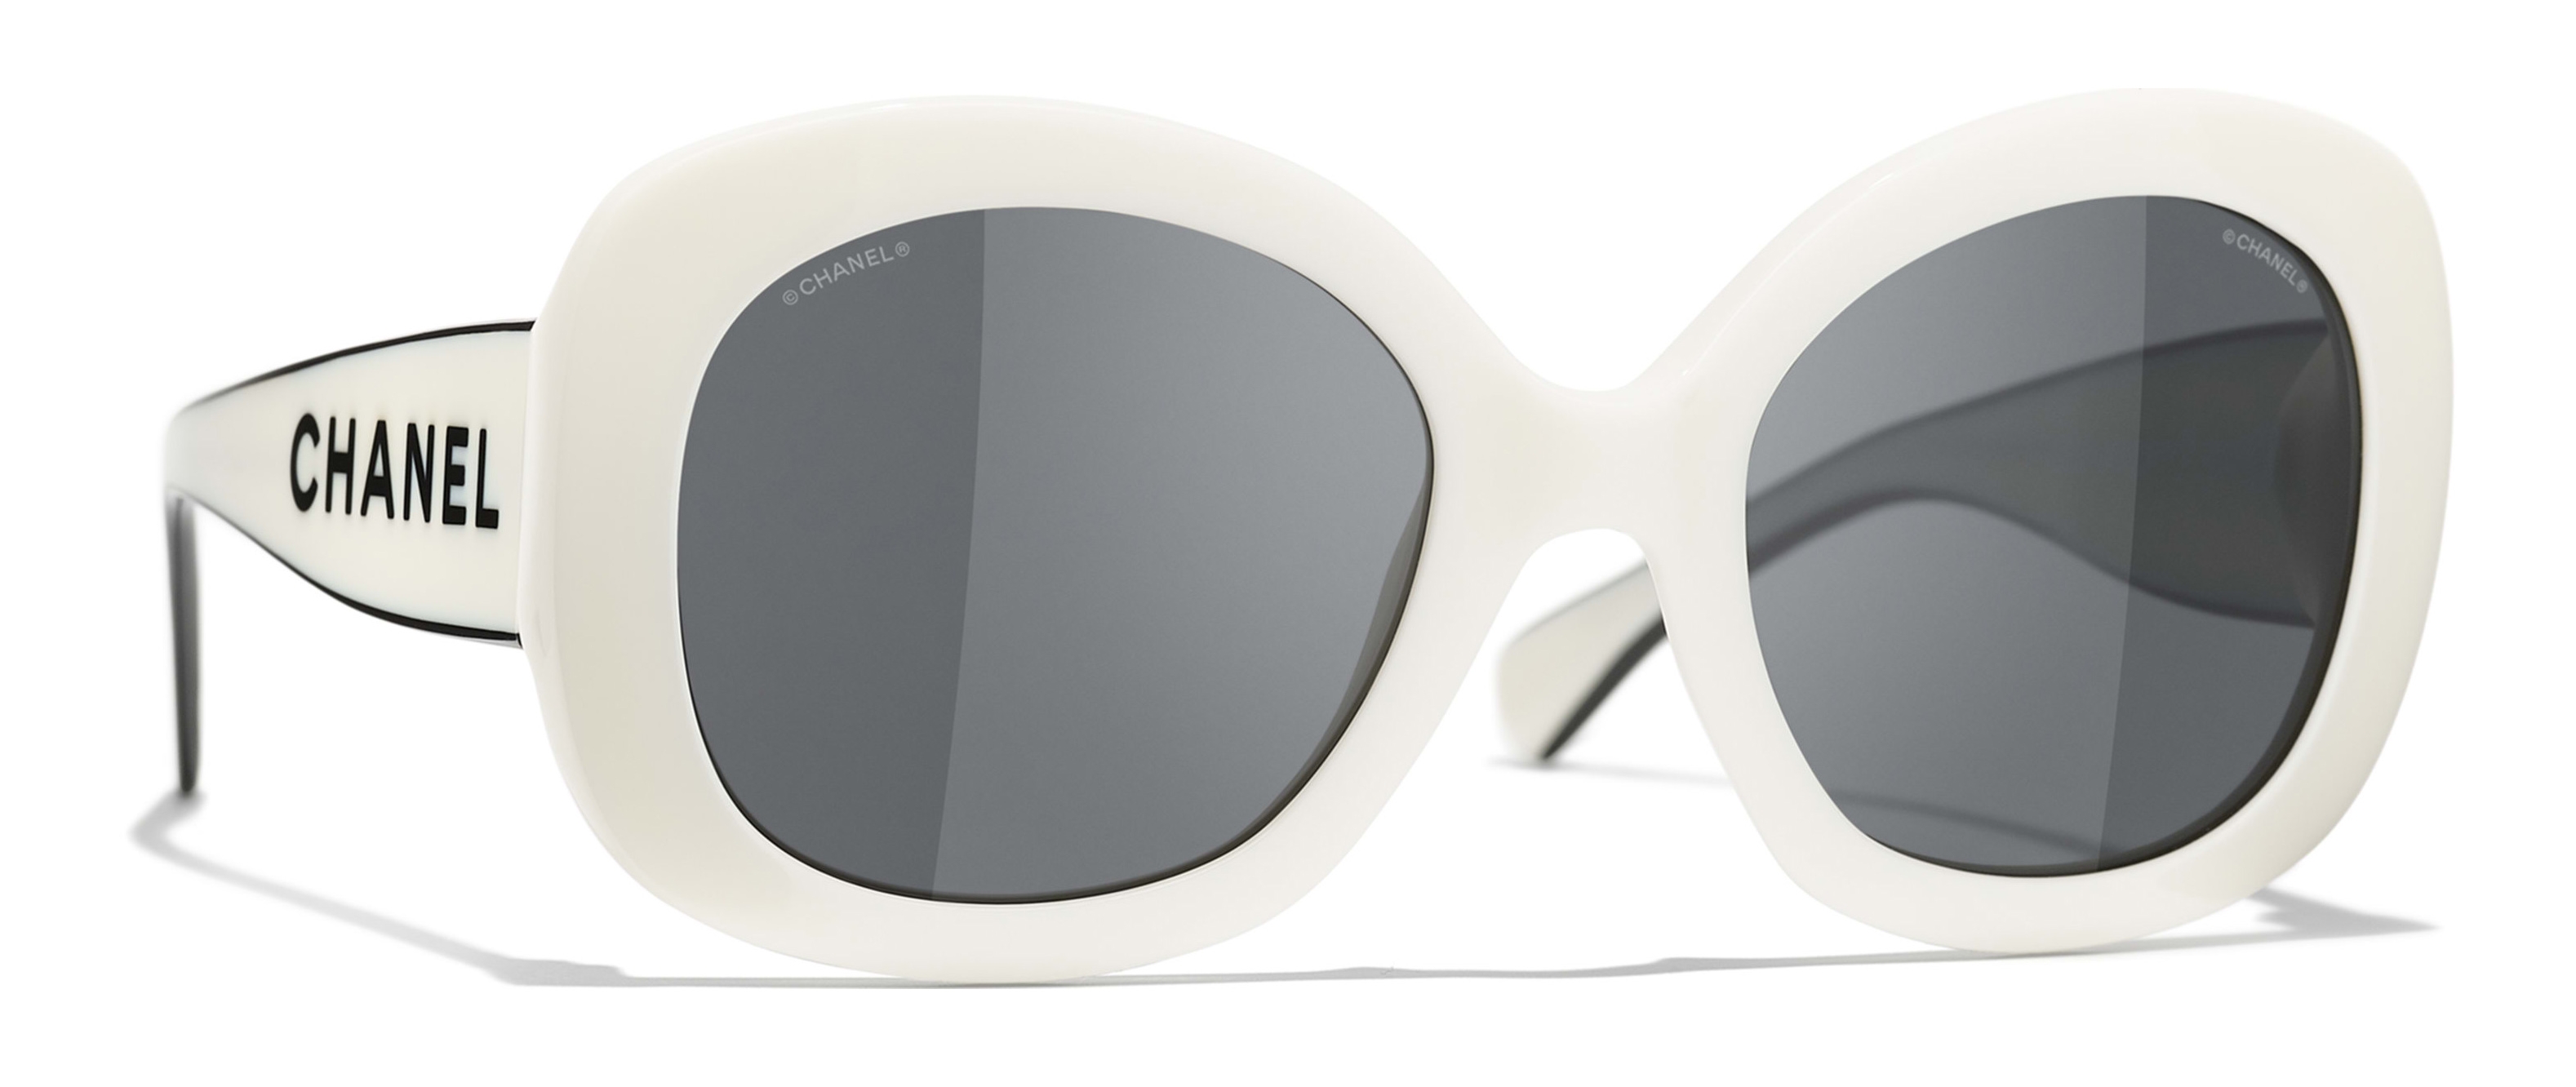 Sunglasses Chanel White in Plastic - 31685973